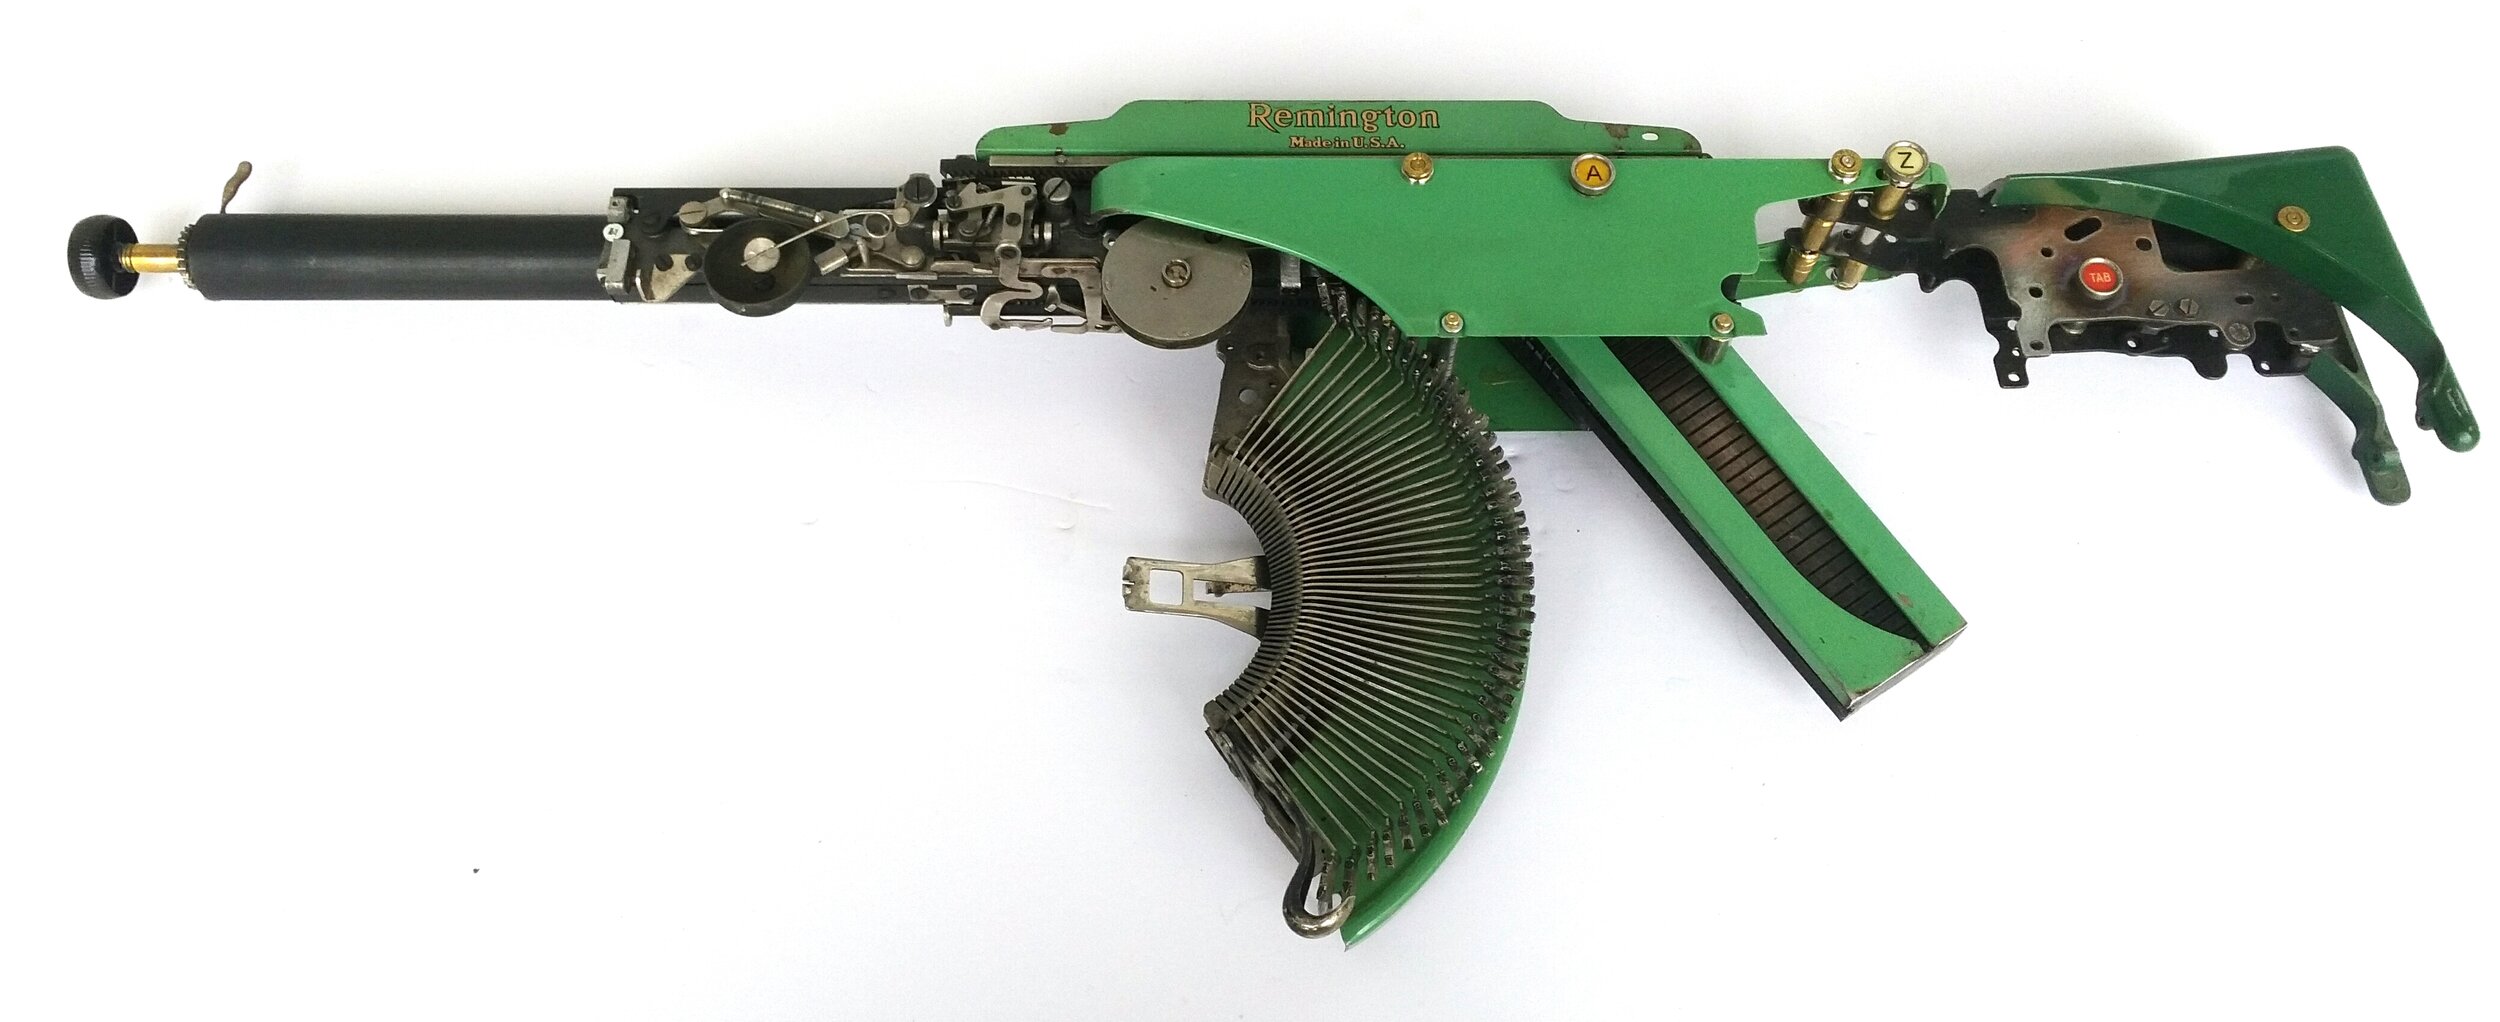  Eric Nado  - Rem Green AZ TAB  - Typewriter MachineGun series- Size: 11" x 30" x 3” inches. Transformed vintage Remington typewriter gun- SOLD 